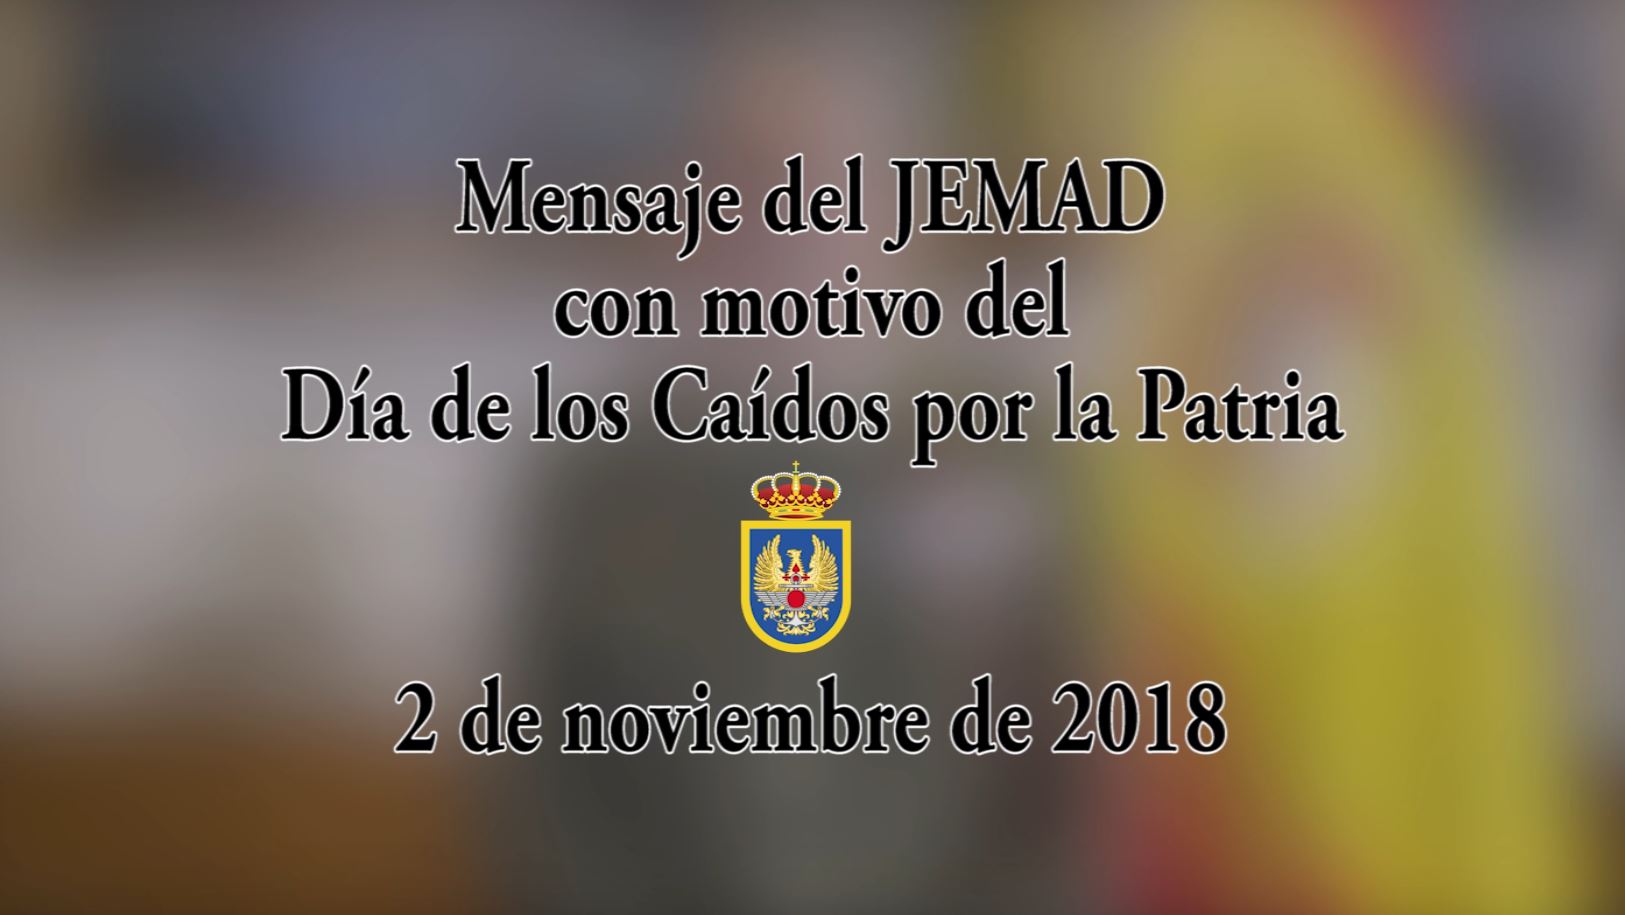 Mensaje del JEMAD con motivo del Día de los Caídos por la Patria, 2 de noviembre de 2018